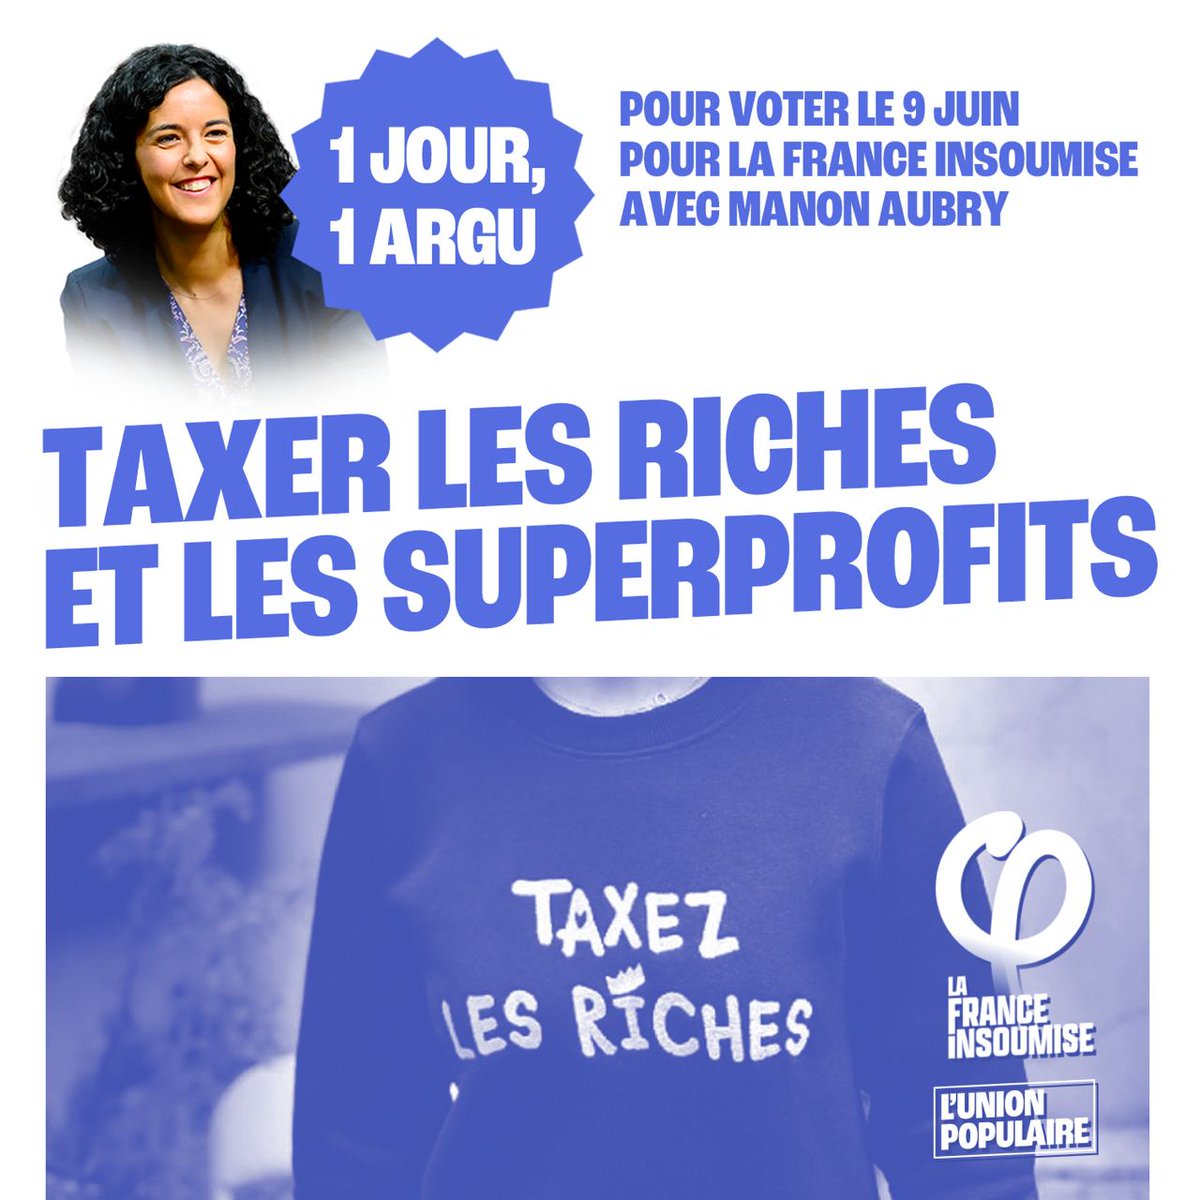 🟣 Un jour, un argument pour voter pour la liste de l'Union populaire aux élections européennes du 9 juin !

✅ Taxer les riches et les superprofits. 

➡️ Le 9 juin, donnez-nous la force de tout changer